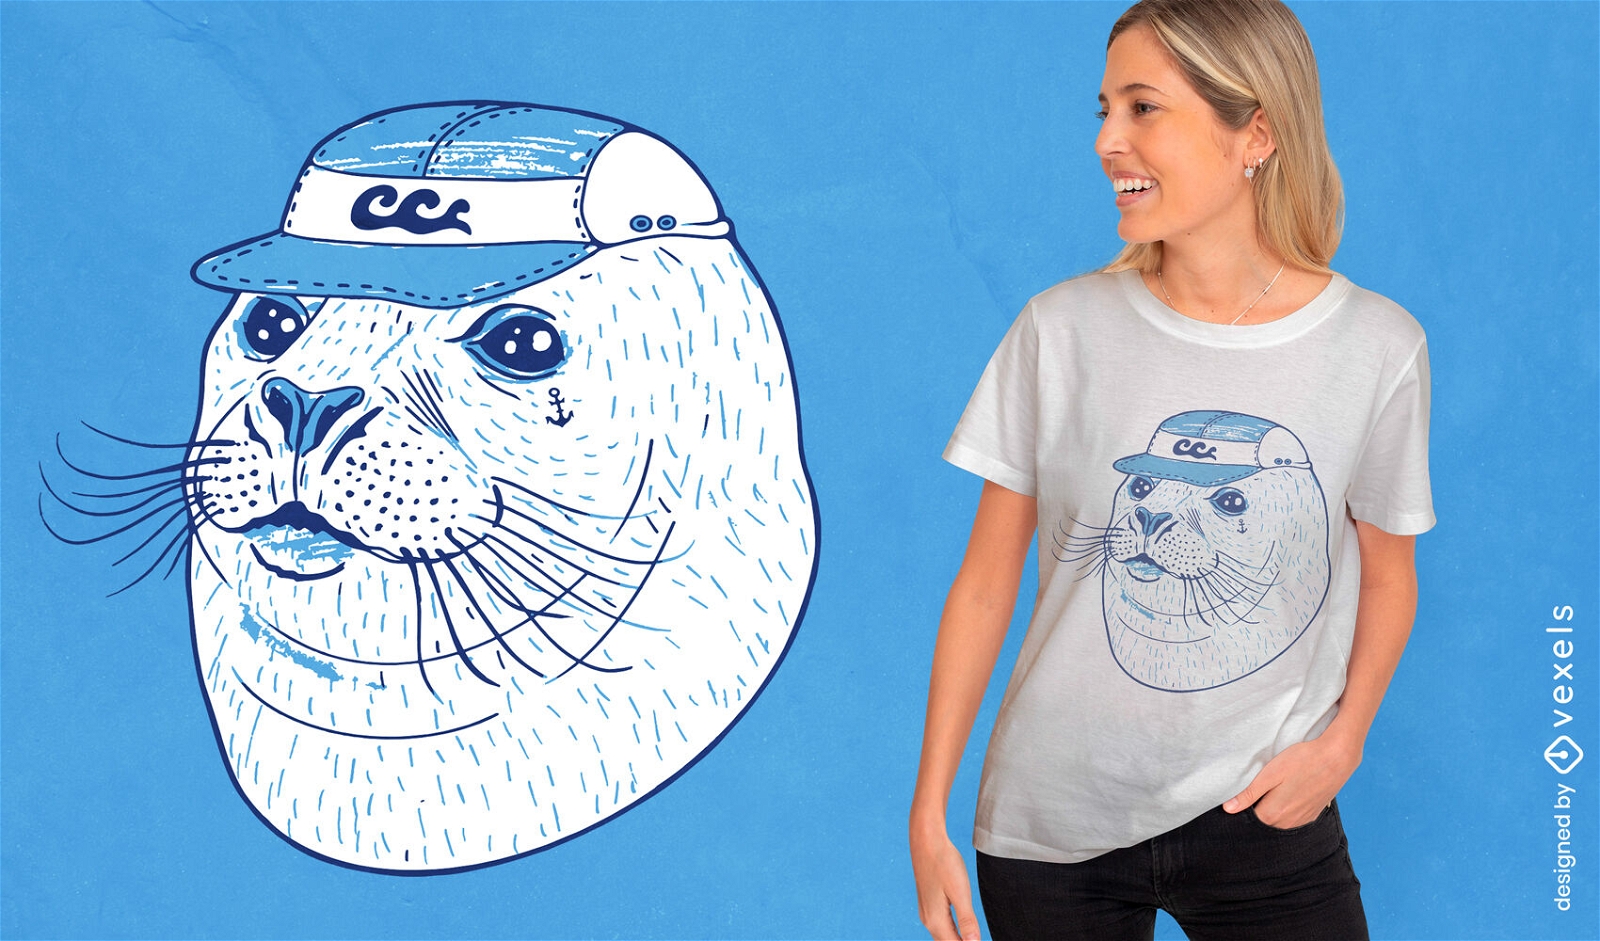 Cool seal portrait t-shirt design